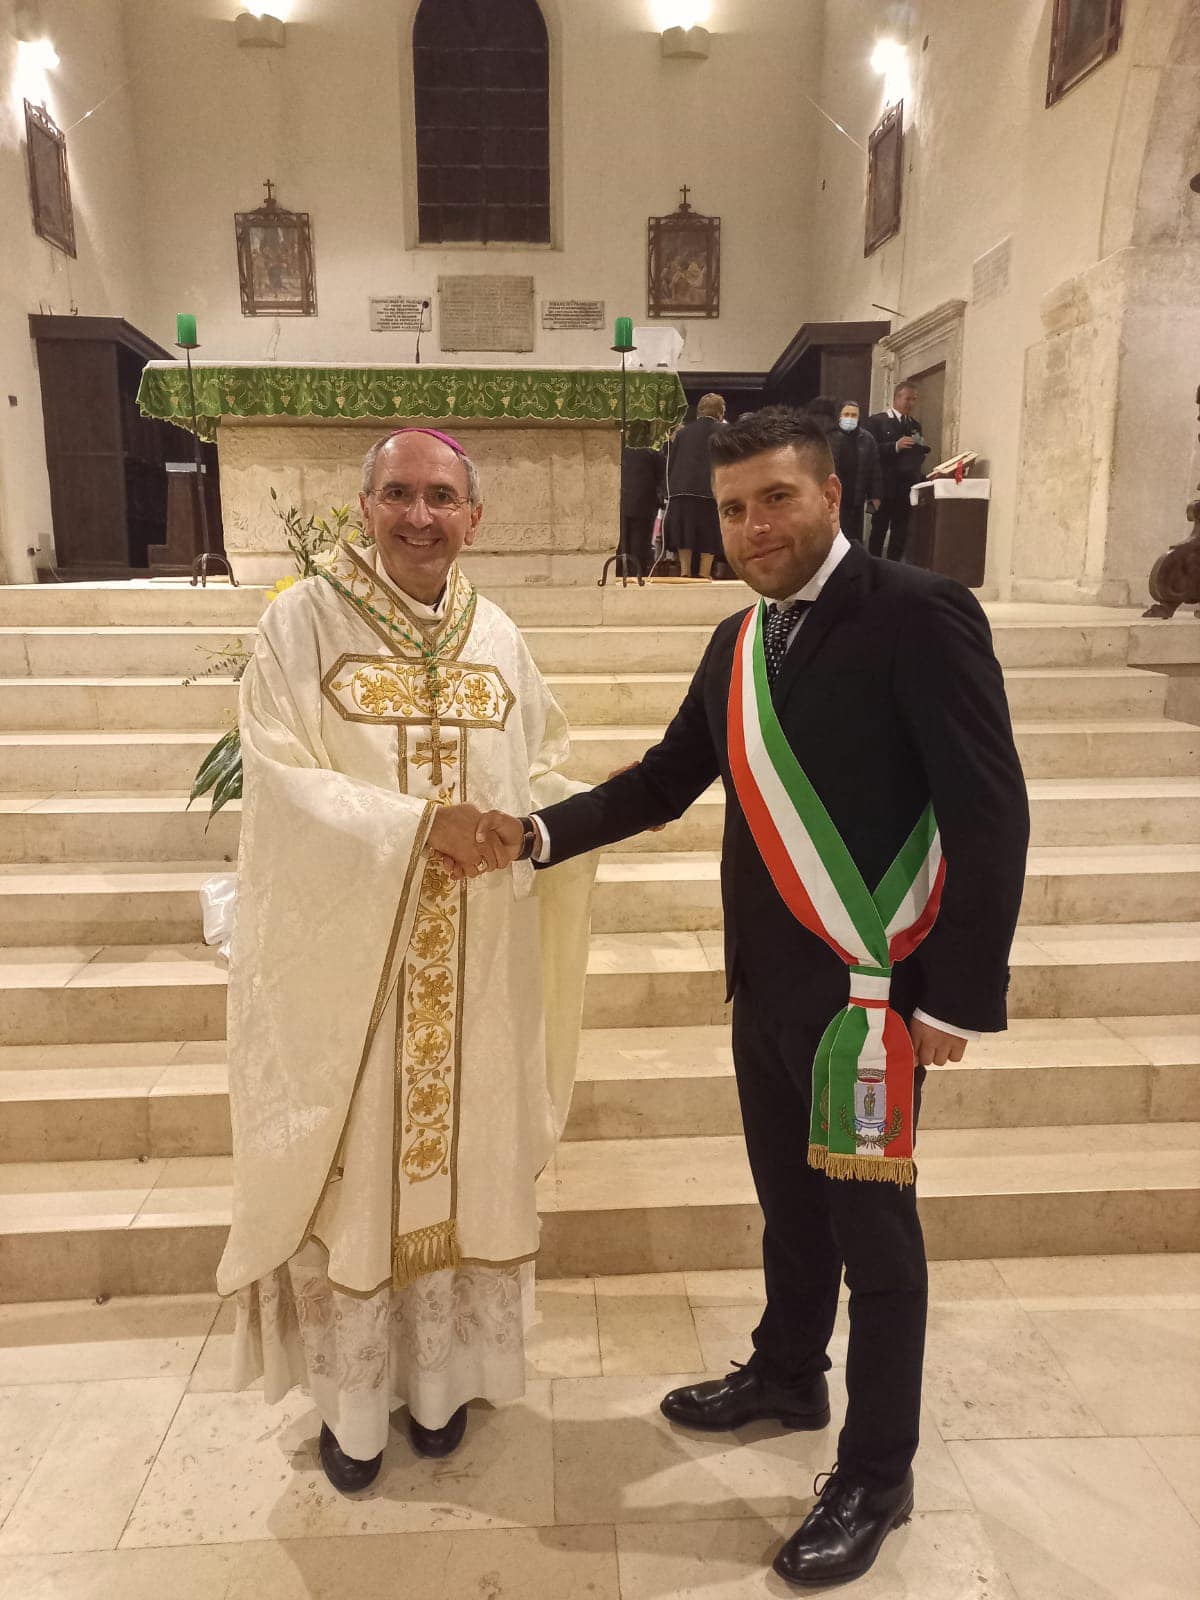 Il Vescovo dei Marsi in visita a Trasacco, le parole di augurio del sindaco Lobene